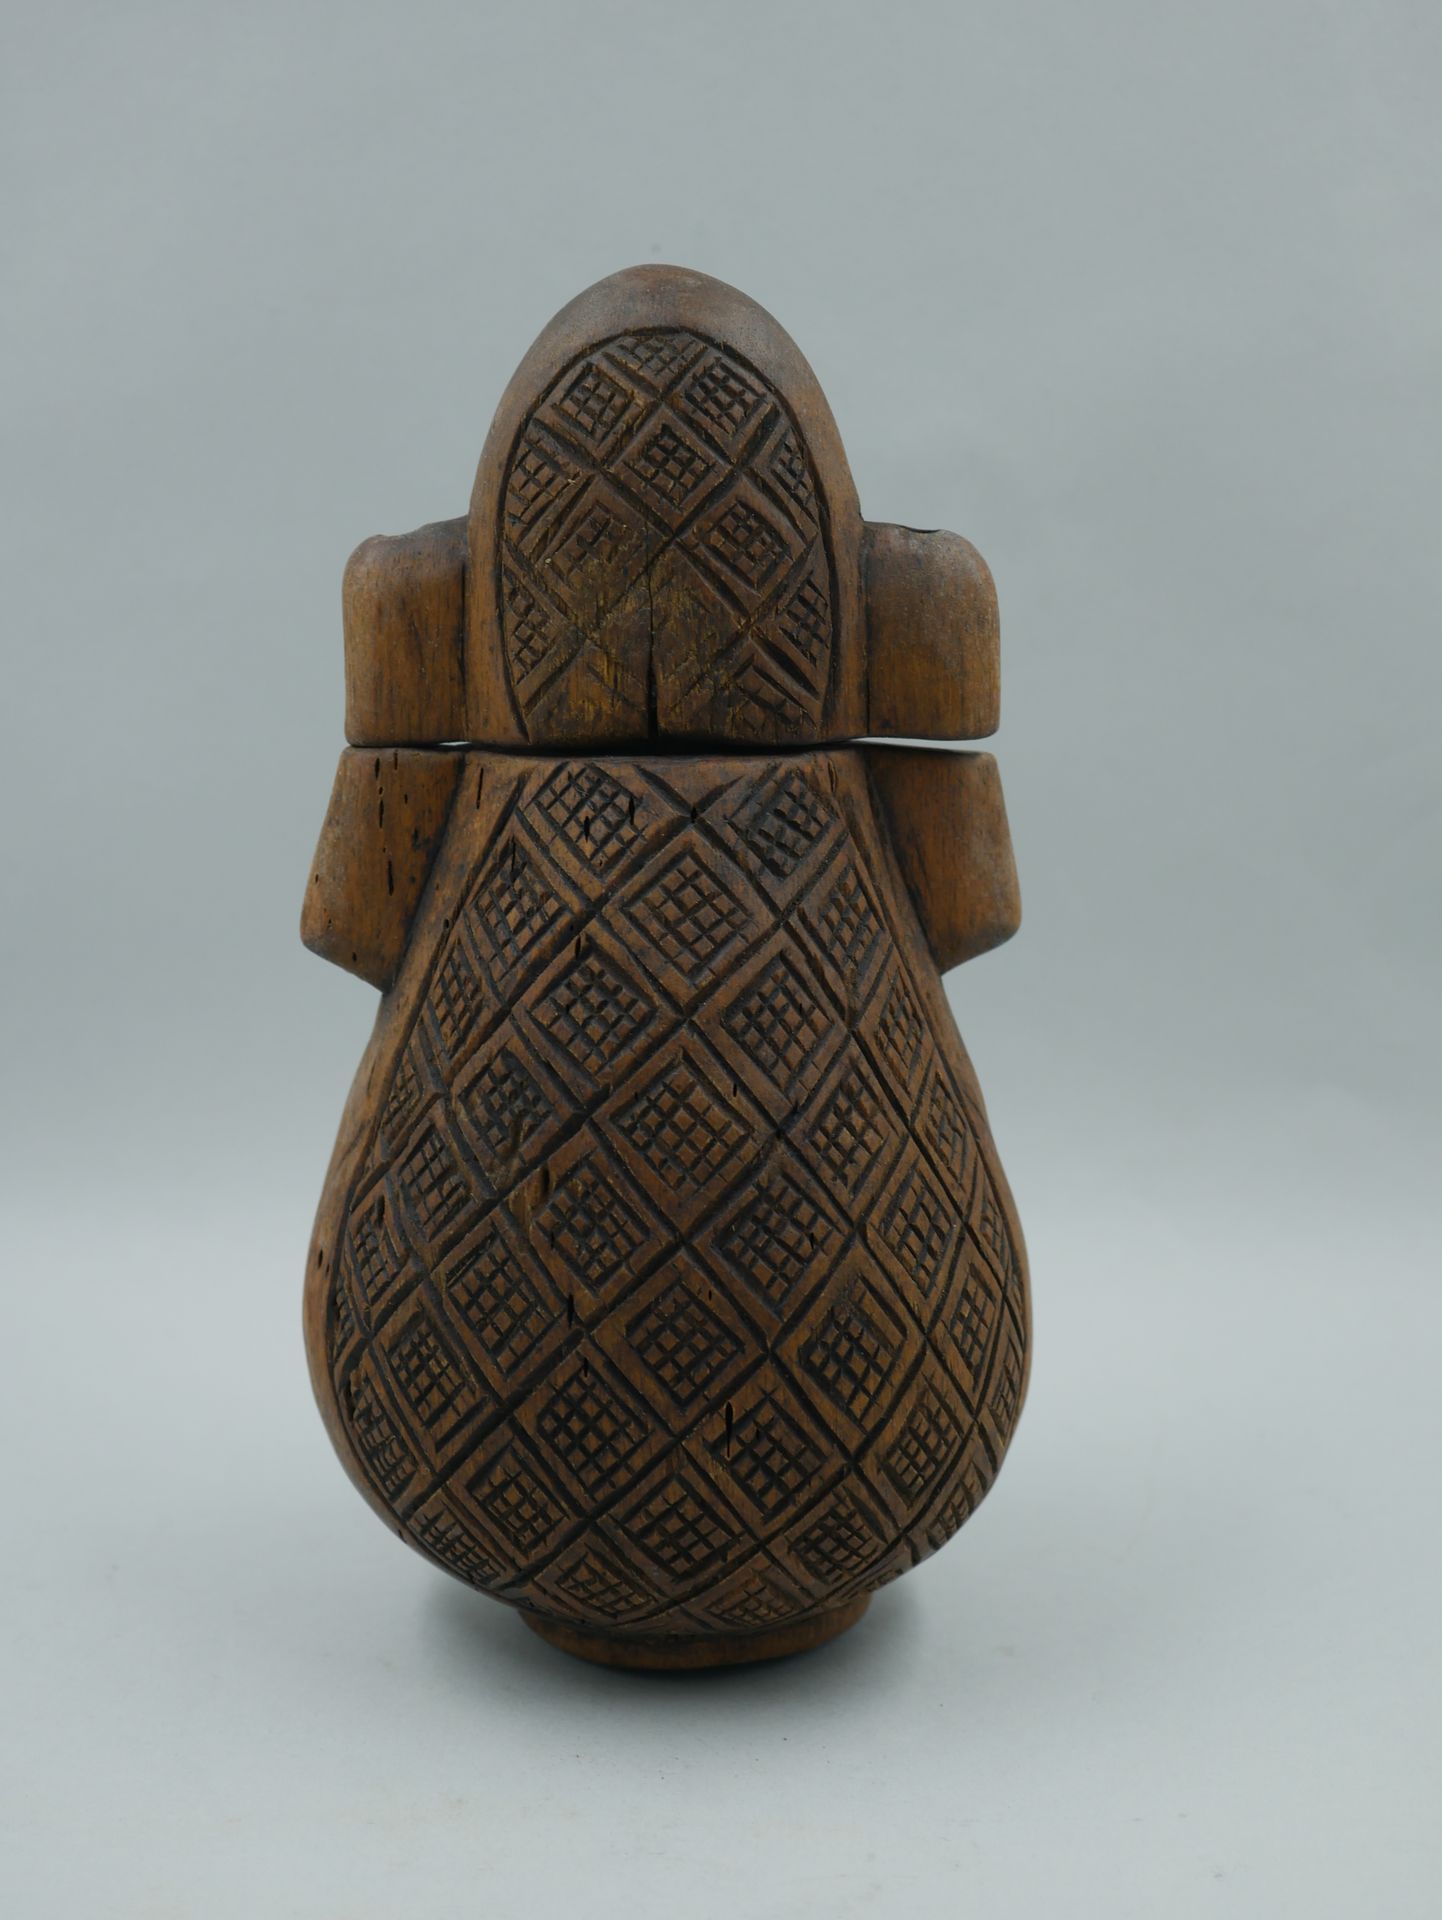 Null 冈比亚民主共和国。 木制葫芦形状的大型火药瓶，上面有星形图案的烟熏装饰，穿孔手柄。高度：22厘米。高22厘米。

出处：法国私人收藏，收购自布鲁塞尔的&hellip;